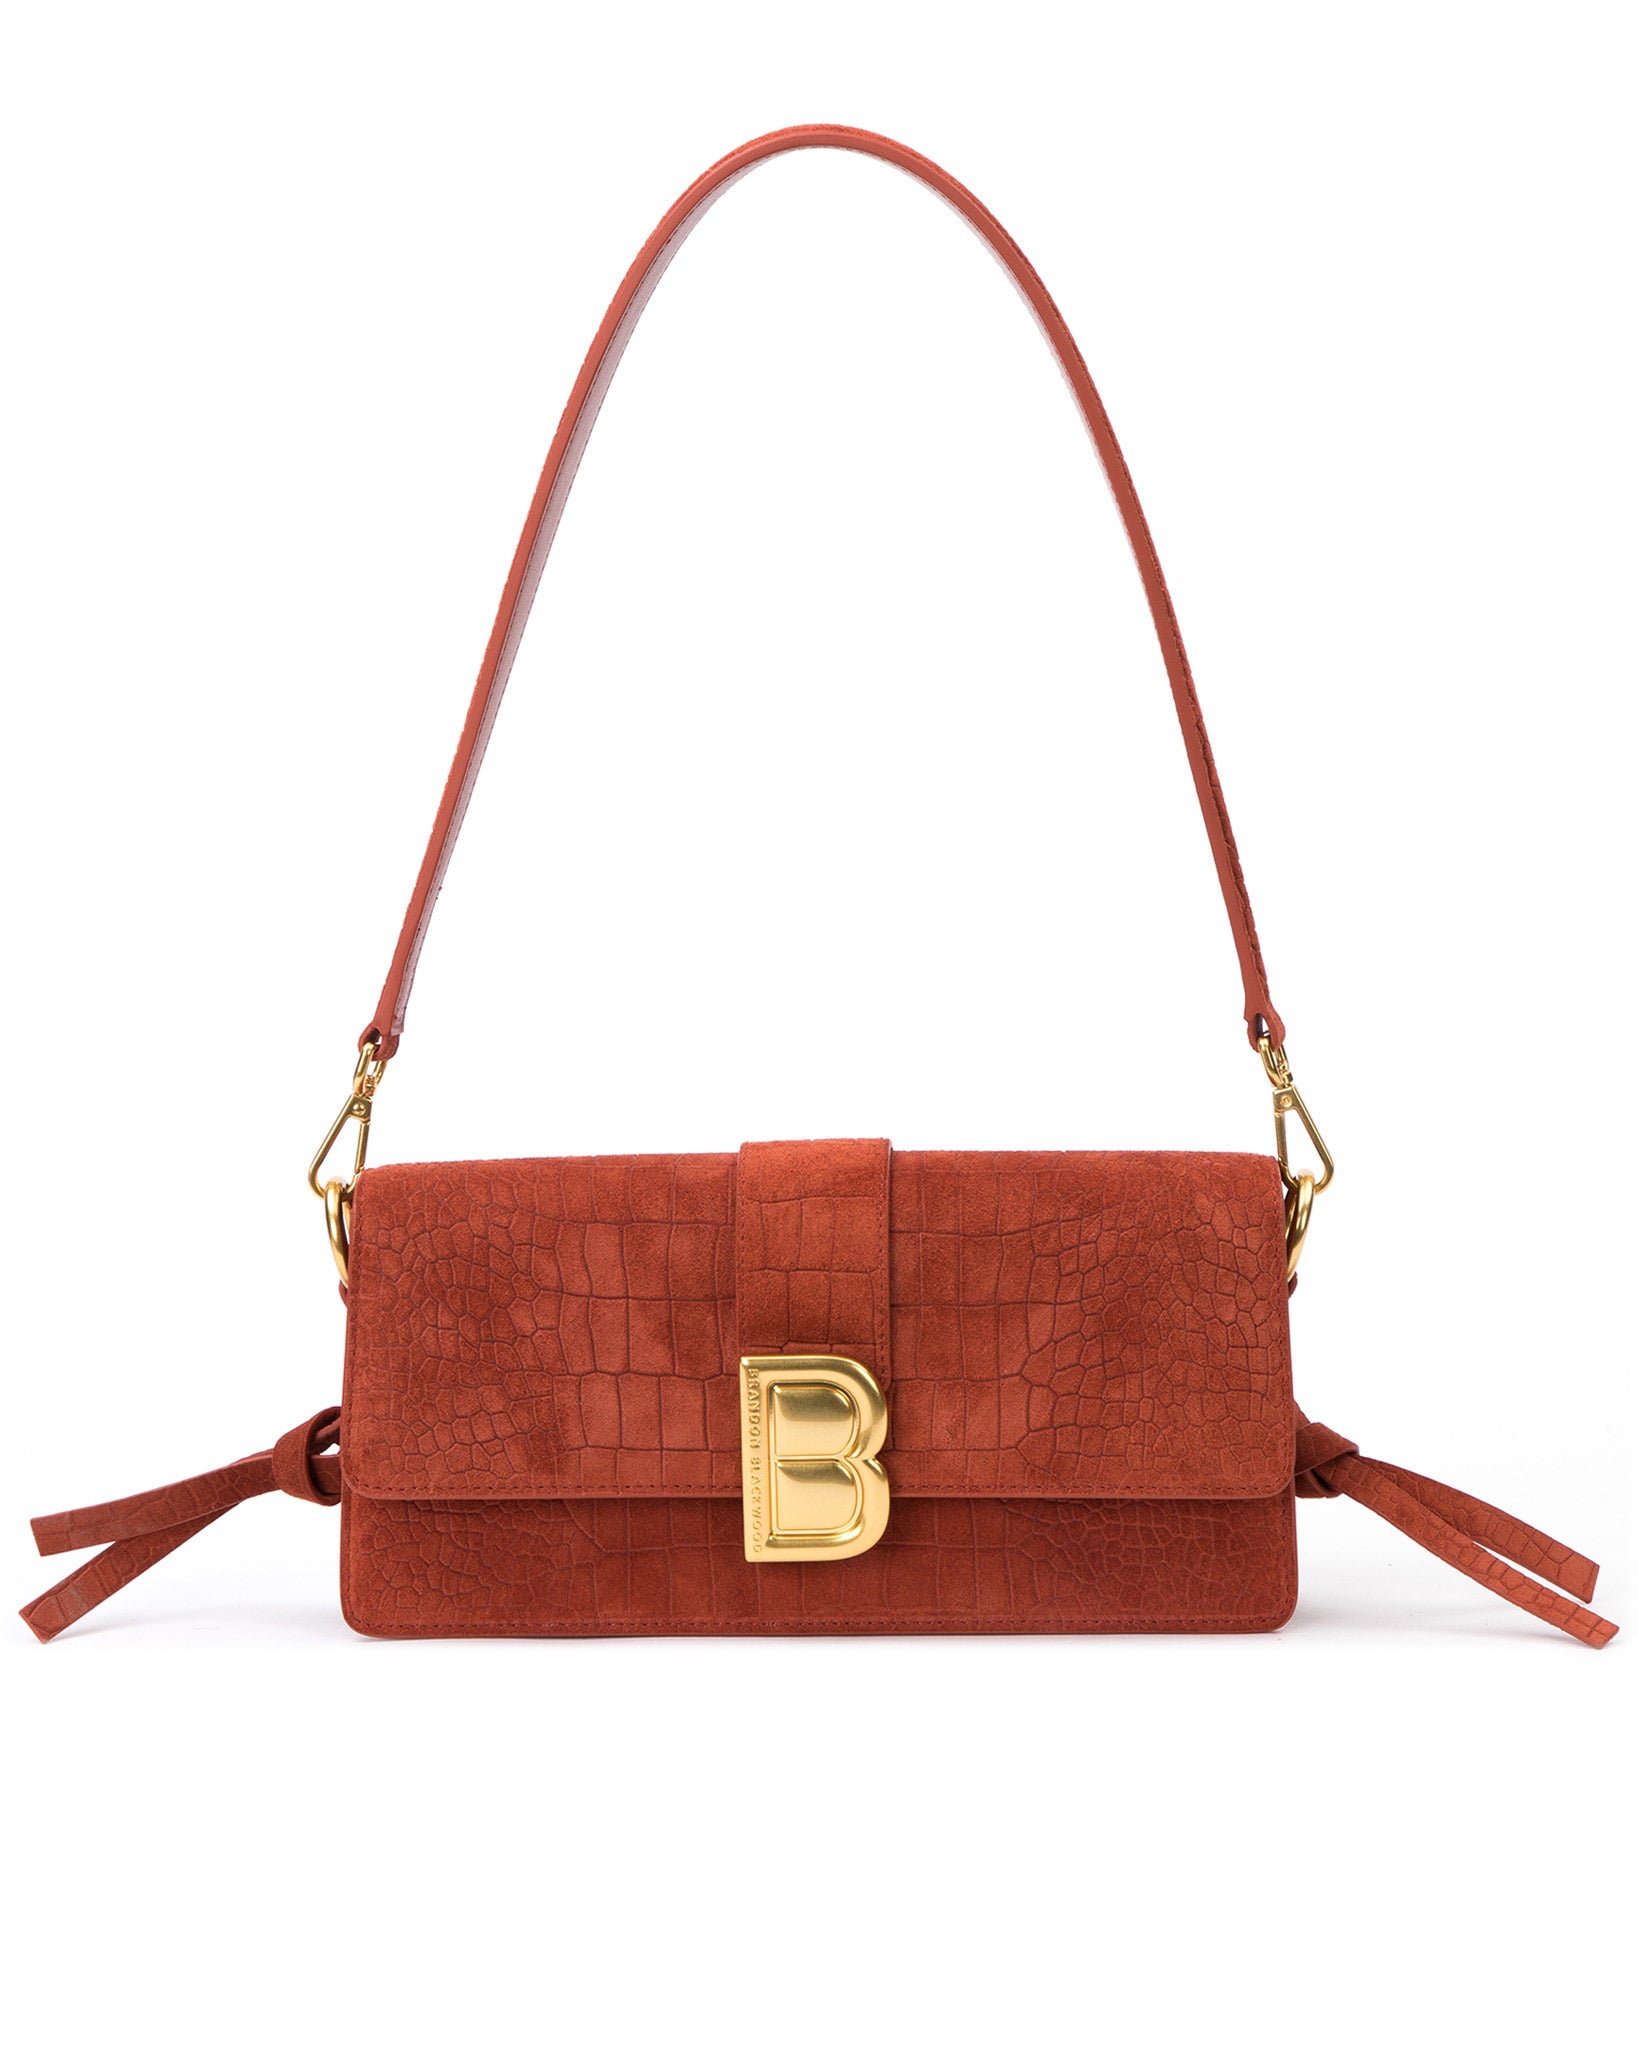 Designer Bags Under $500: 6 of the Best – Brandon Blackwood New York